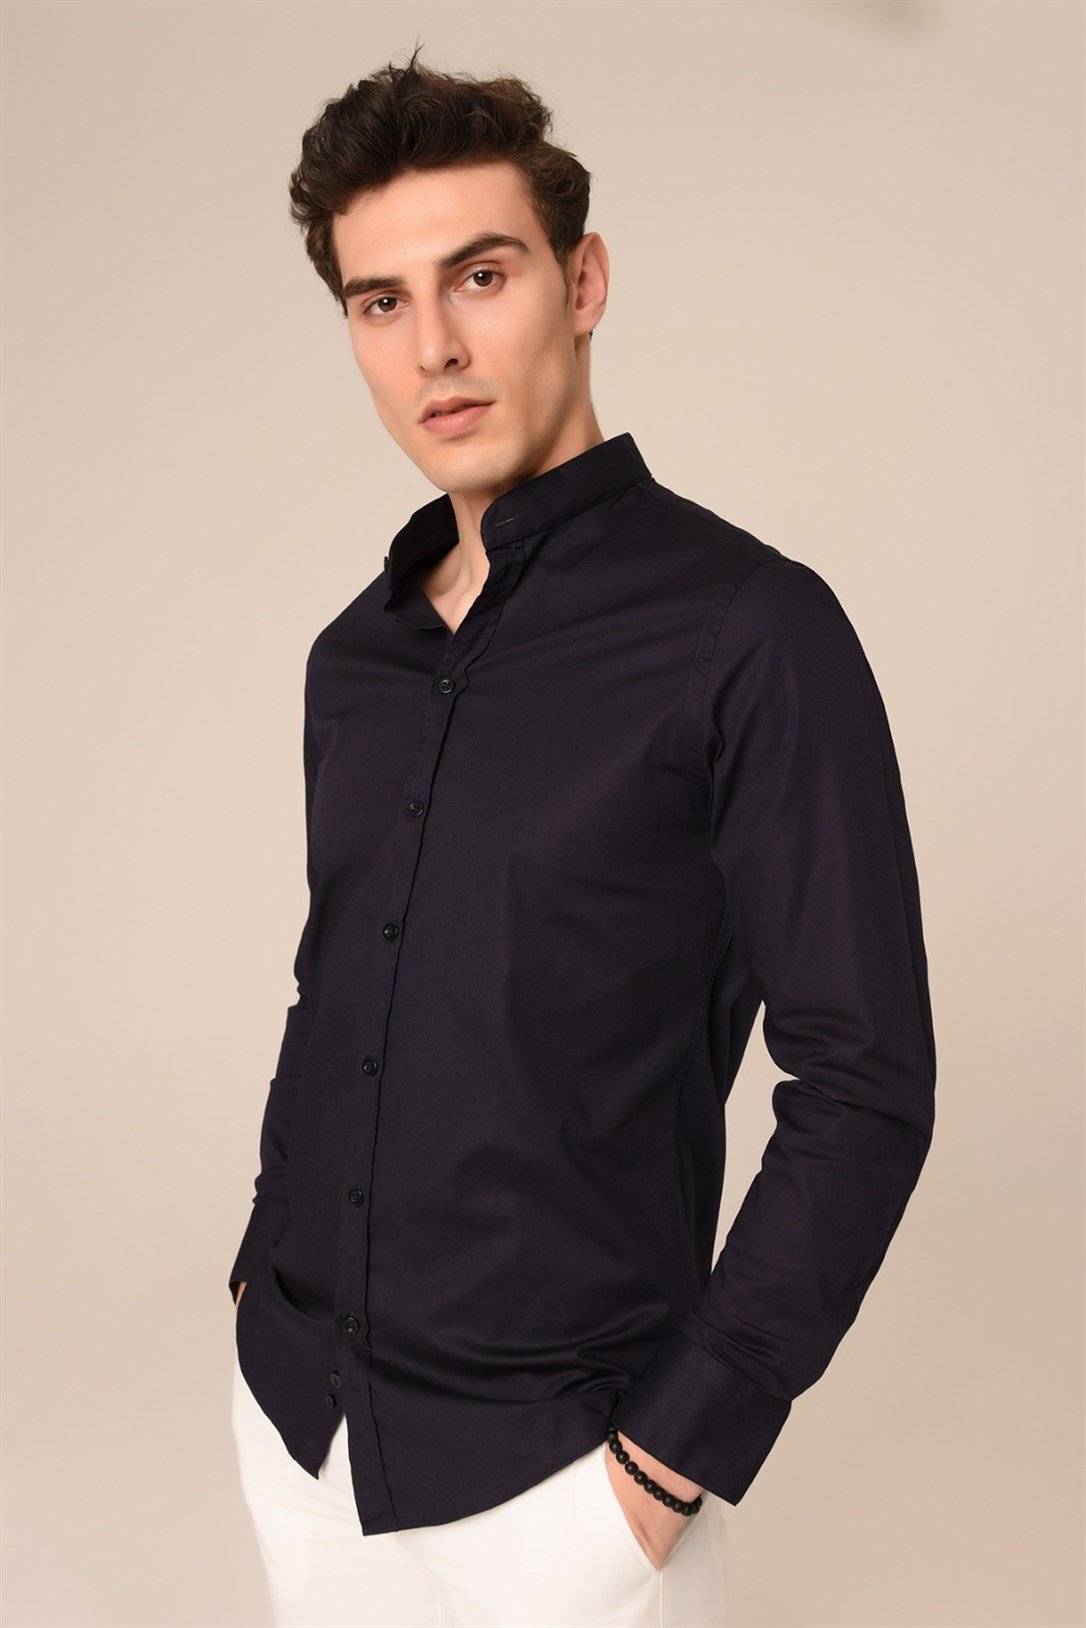 Siyah Slim Fit Gömlek Modelleri ve Fiyatları | Agustini